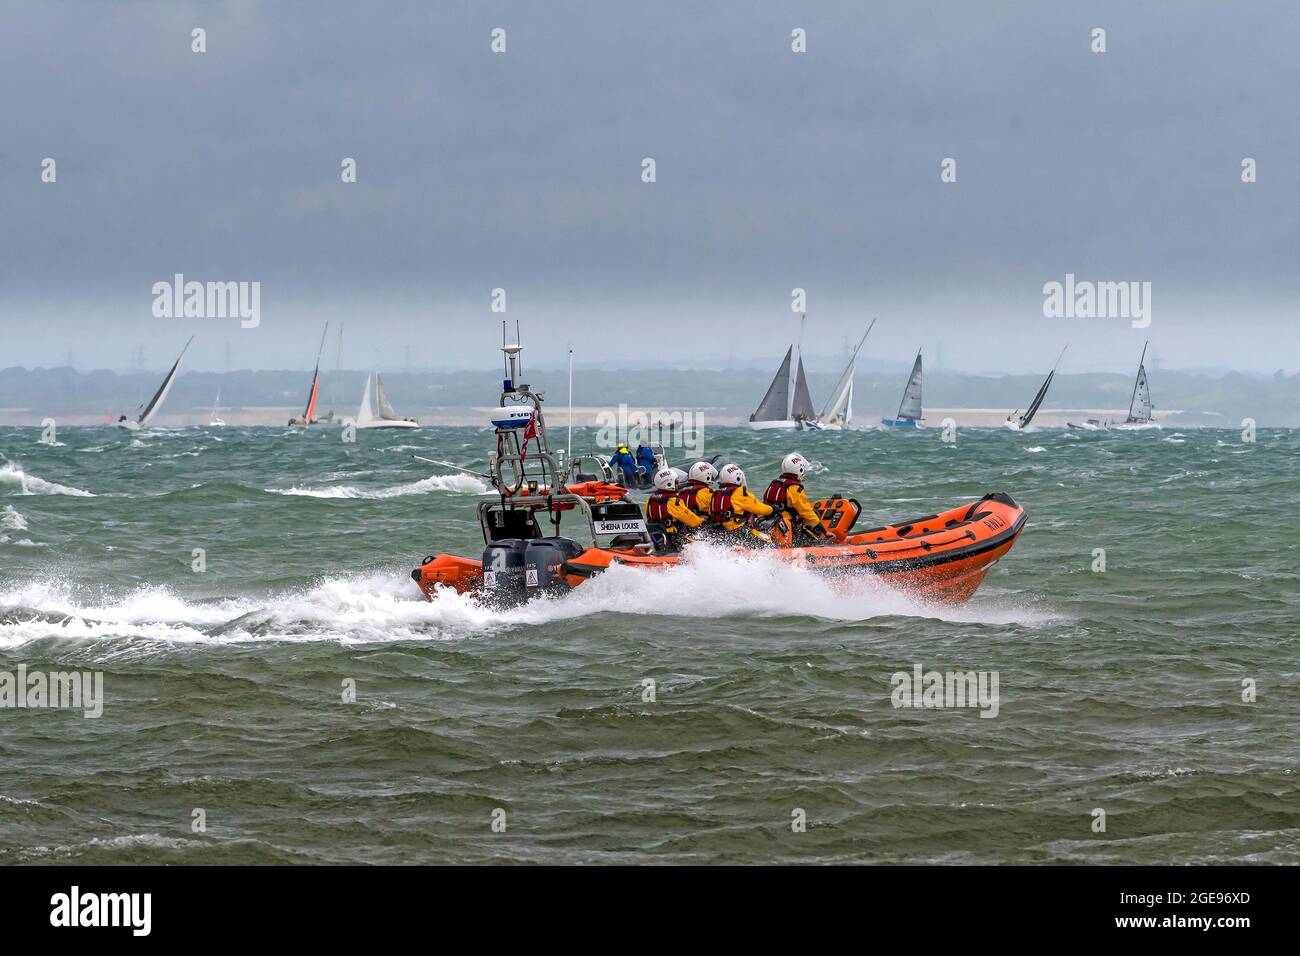 RNLI lifboat al inicio de Rolex Fastnet Race el 8 de agosto de 2021.Los competidores se enfrentaron a condiciones agotadoras con alta winds.Cowes,Isla de Wight,Inglaterra, Foto de stock